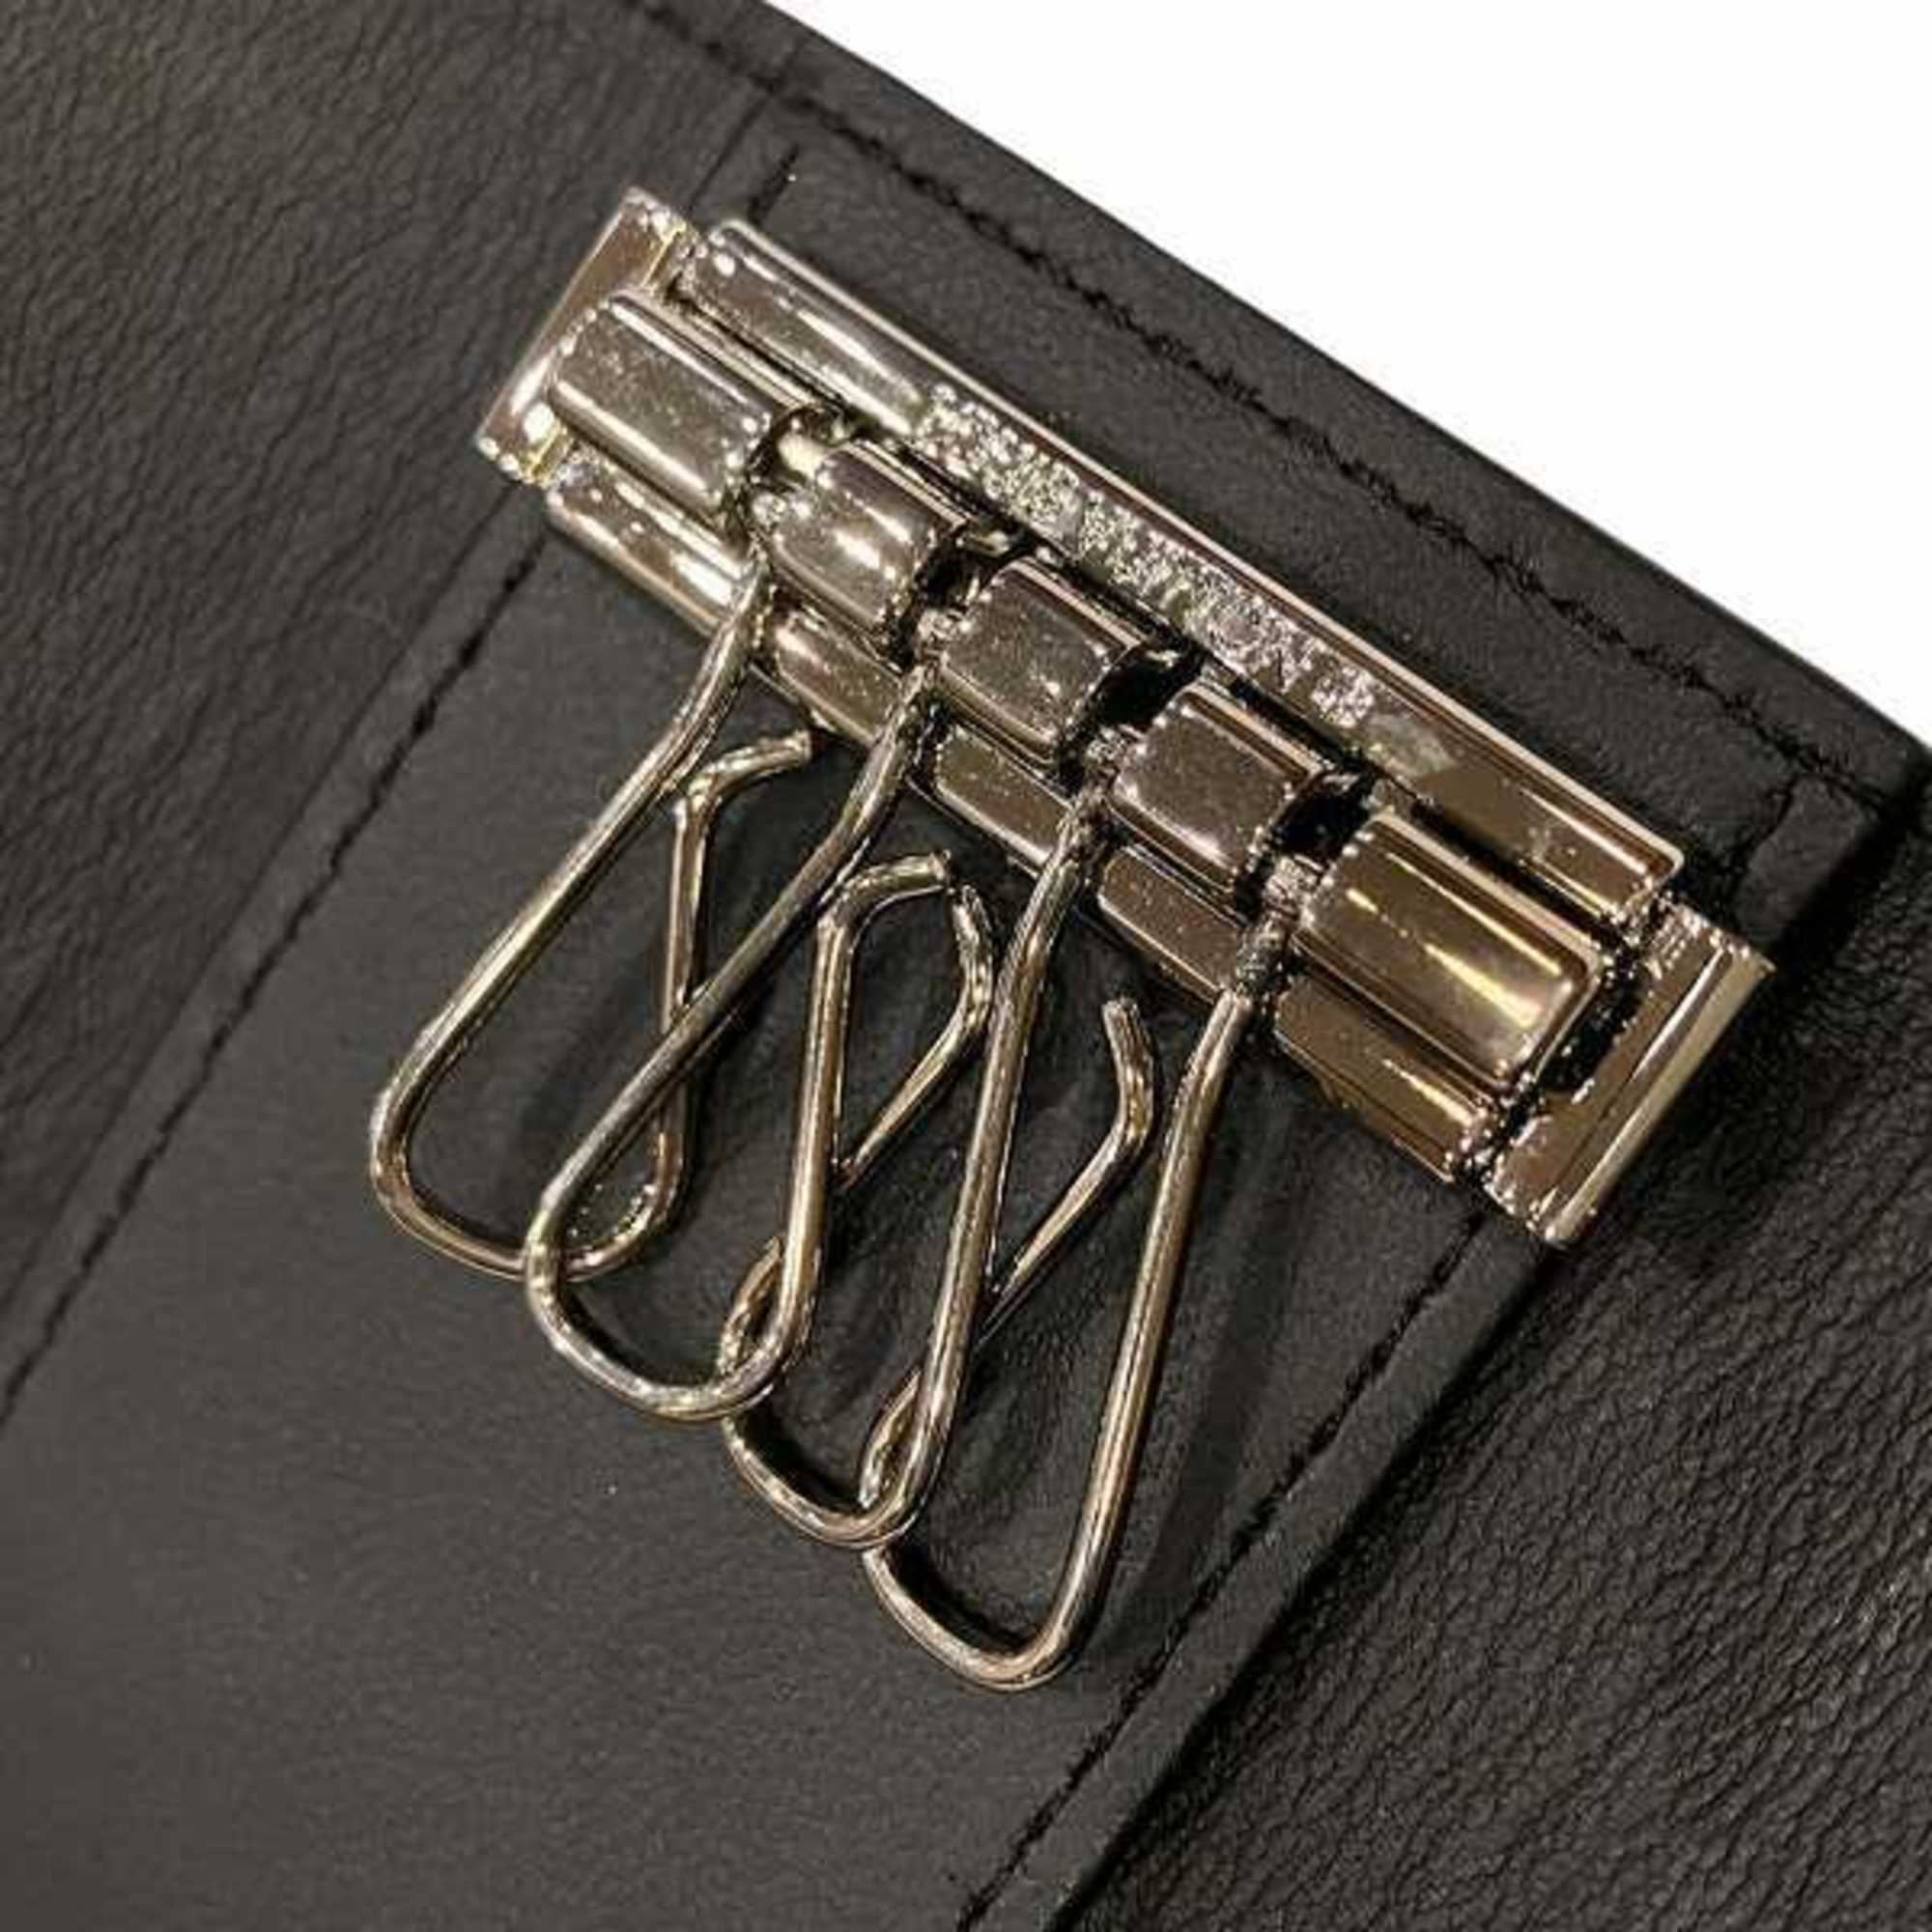 Louis Vuitton Monogram Mahina Multicle 4 M64054 Accessories Key Case Men's Women's